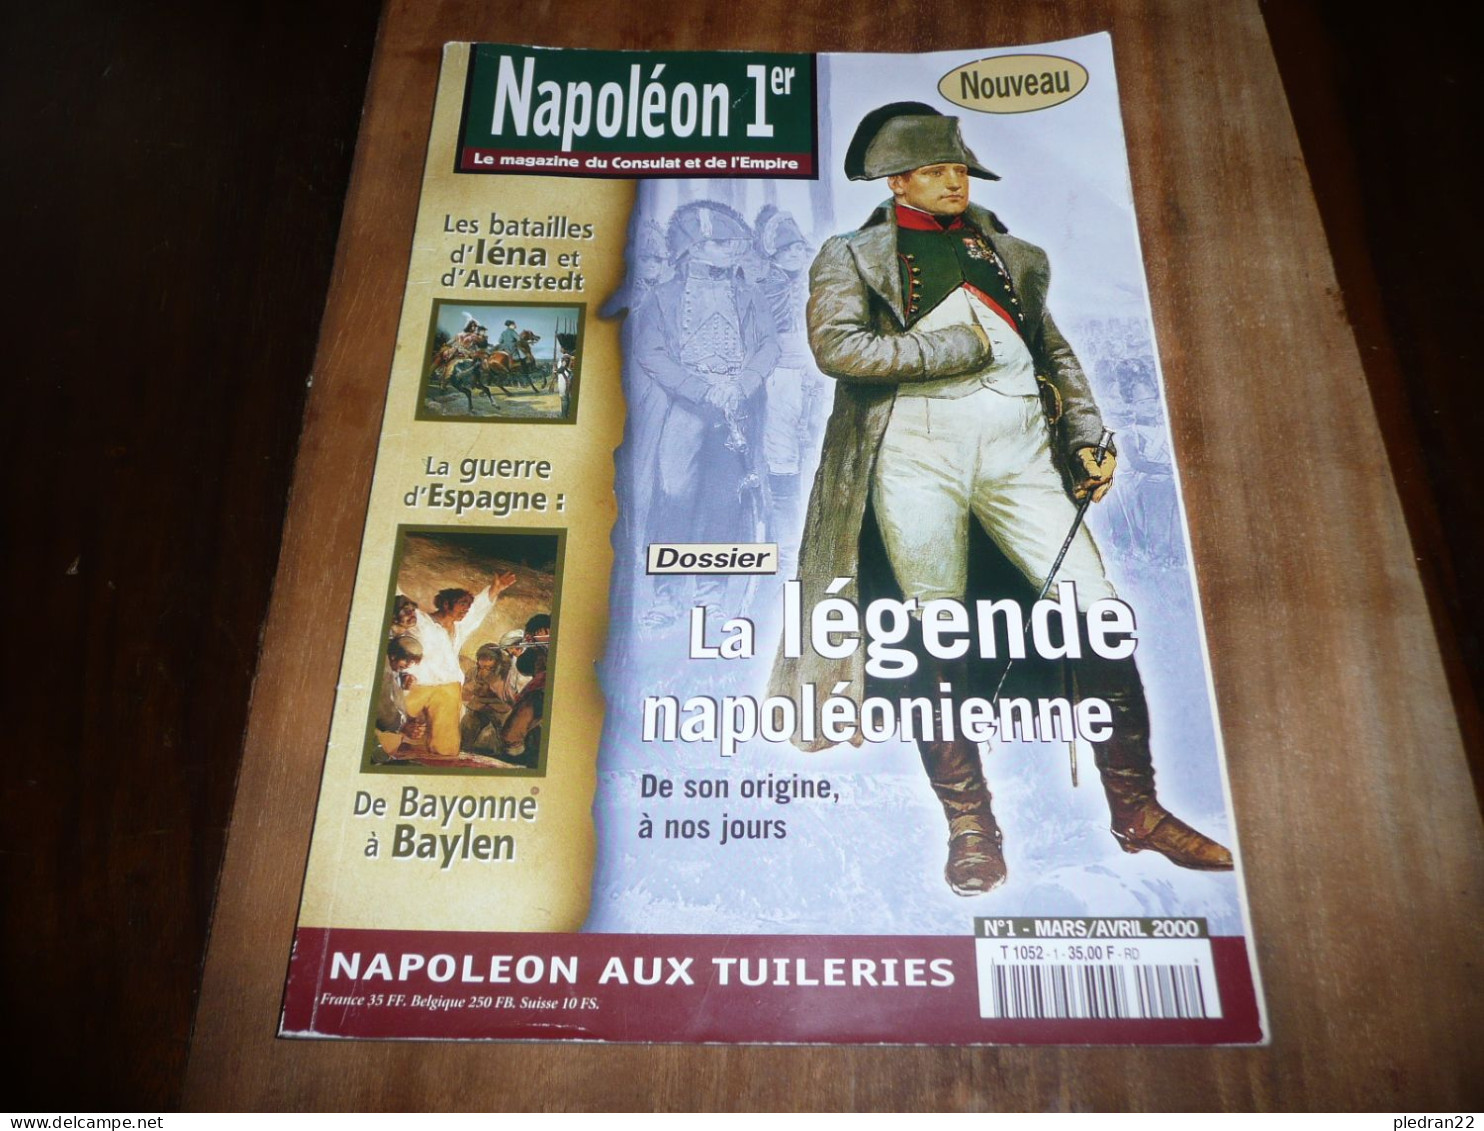 REVUE NAPOLEON 1er LE MAGAZINE DU CONSULAT ET DE L'EMPIRE N° 1 MARS AVRIL 2000 - Geschiedenis